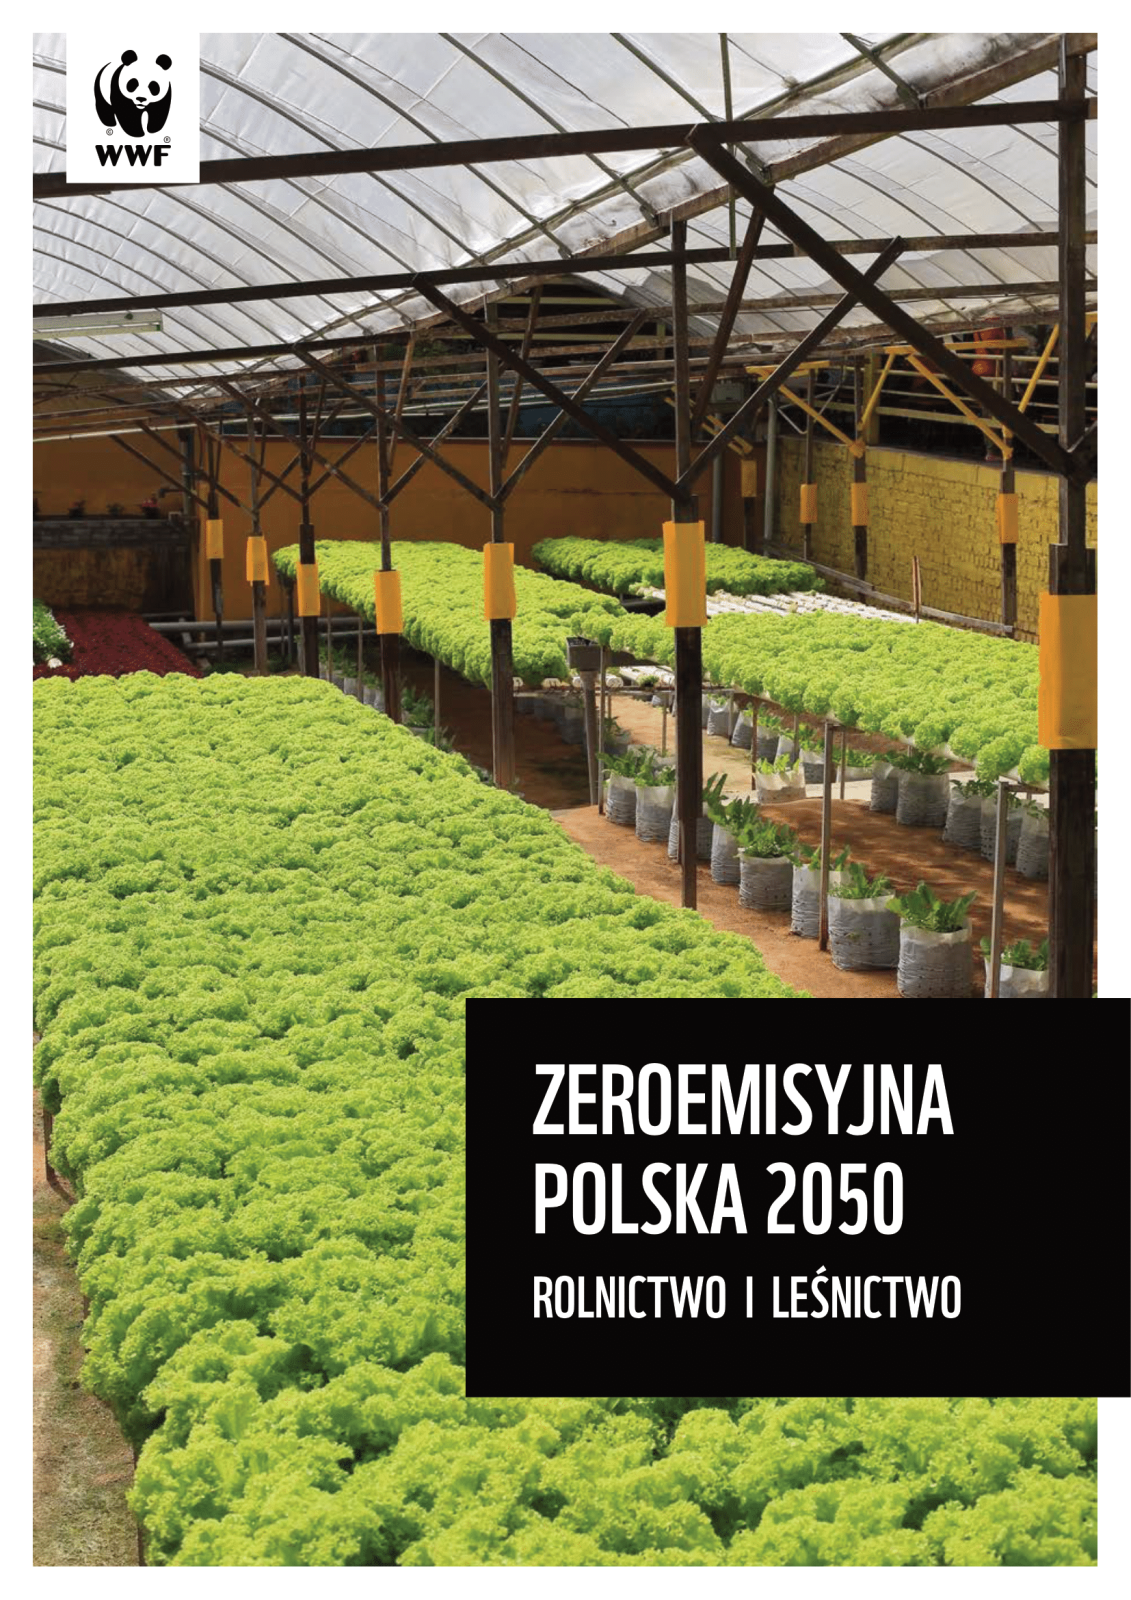 wwf-poland-zeroemisyjna-polska-rolnictwo-01.png